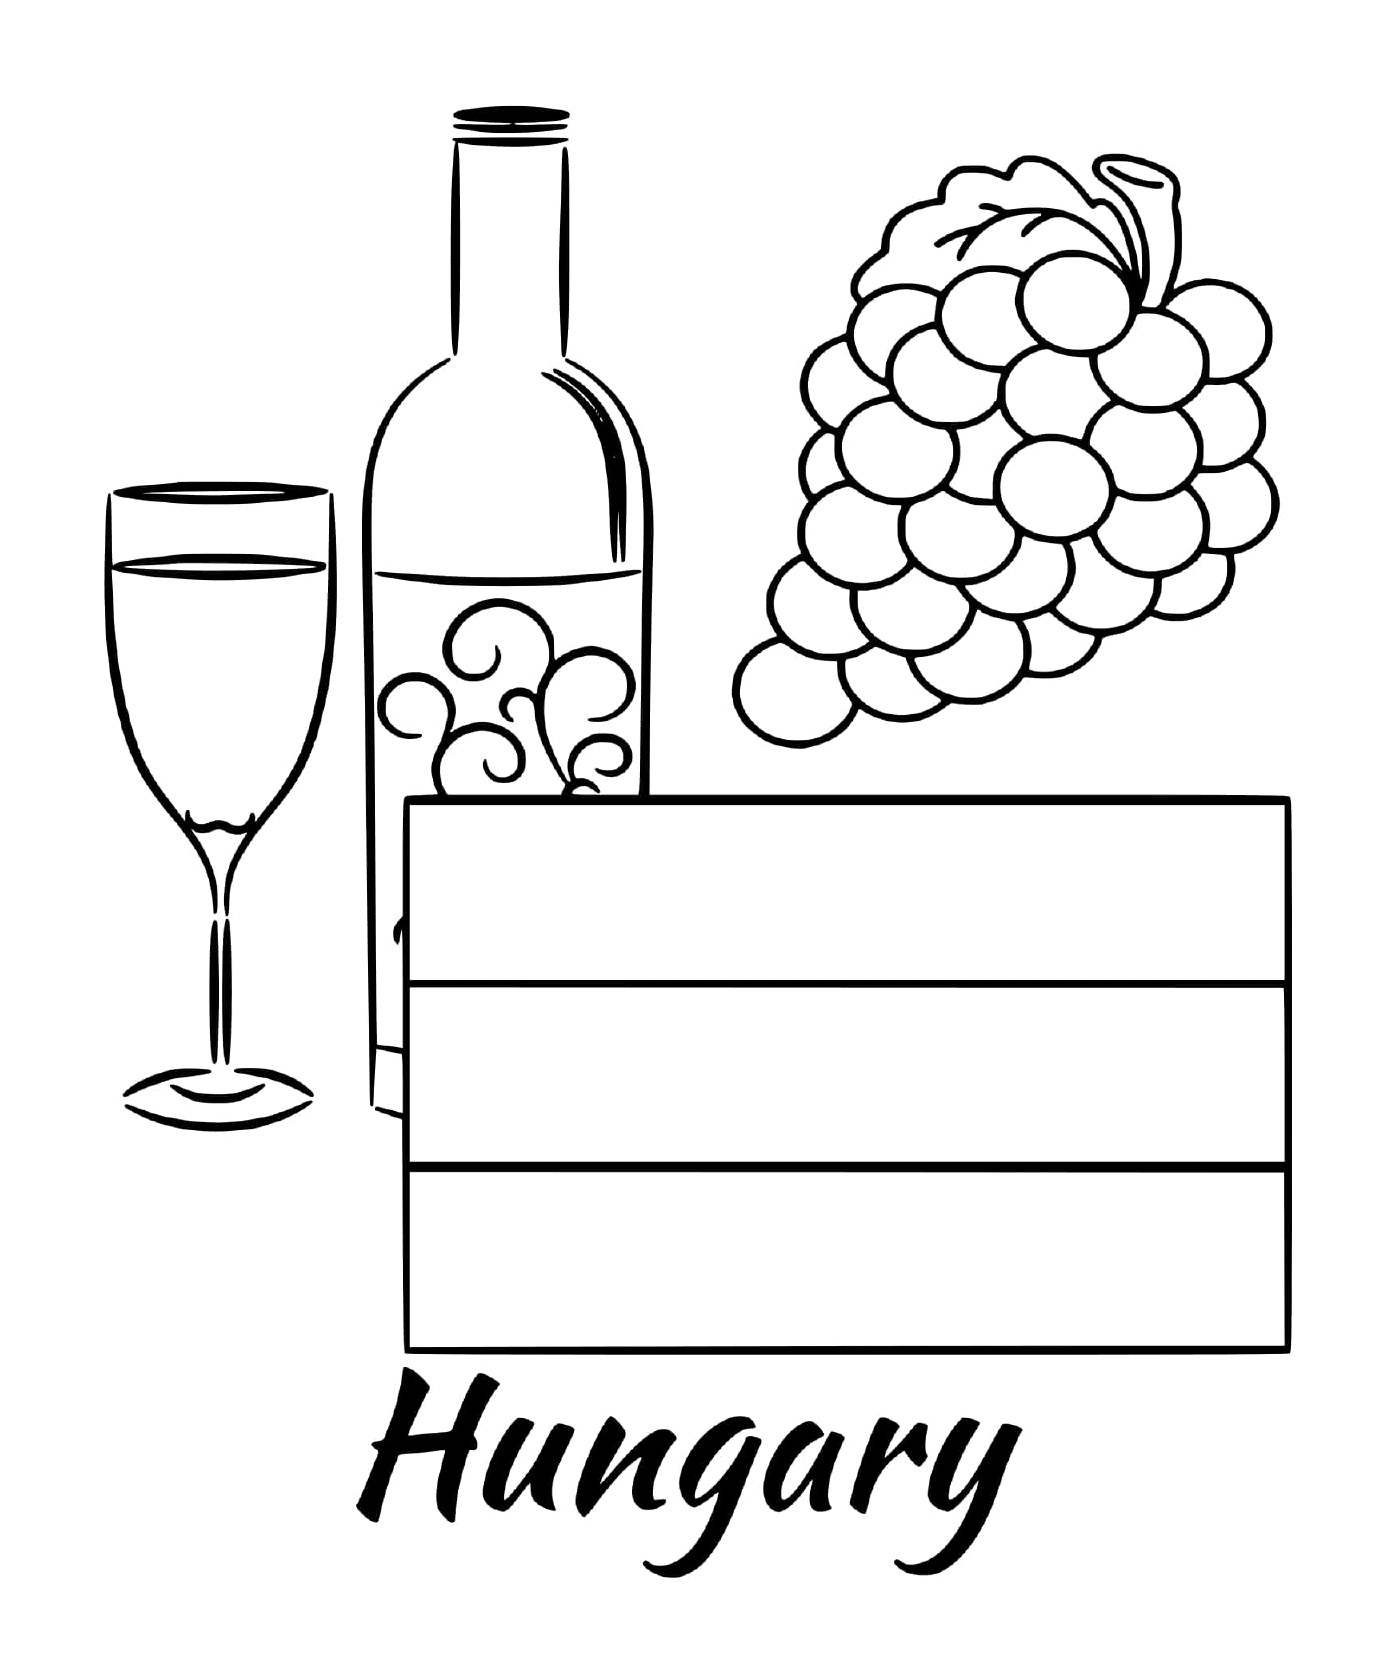  शराब के साथ हंगरी का फ्लैग 